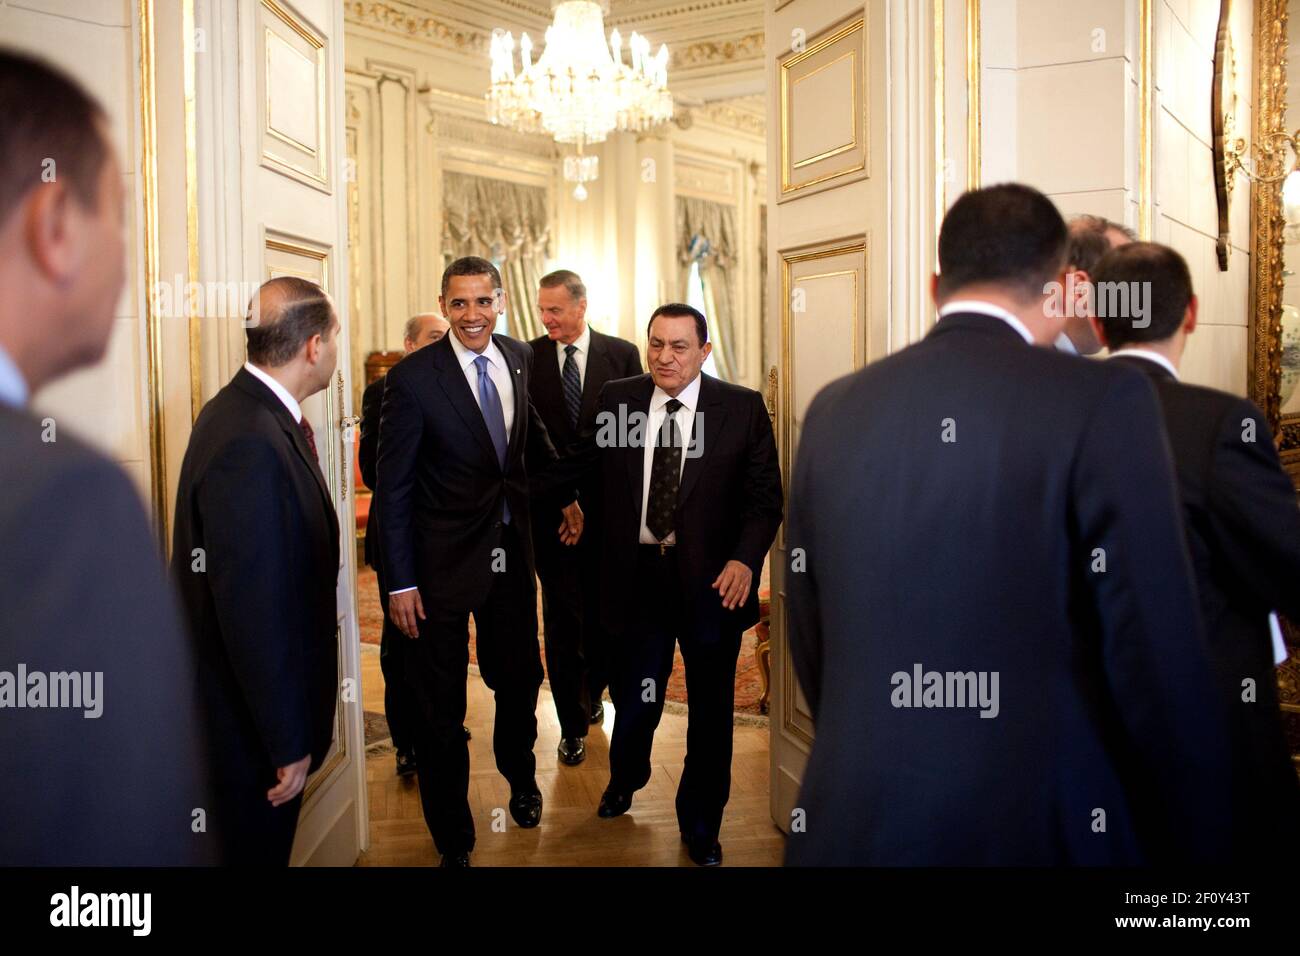 President Barack Obama meets with Egyptian President Hosni Mubarak in Cairo, Egypt, June 4, 2009 Stock Photo